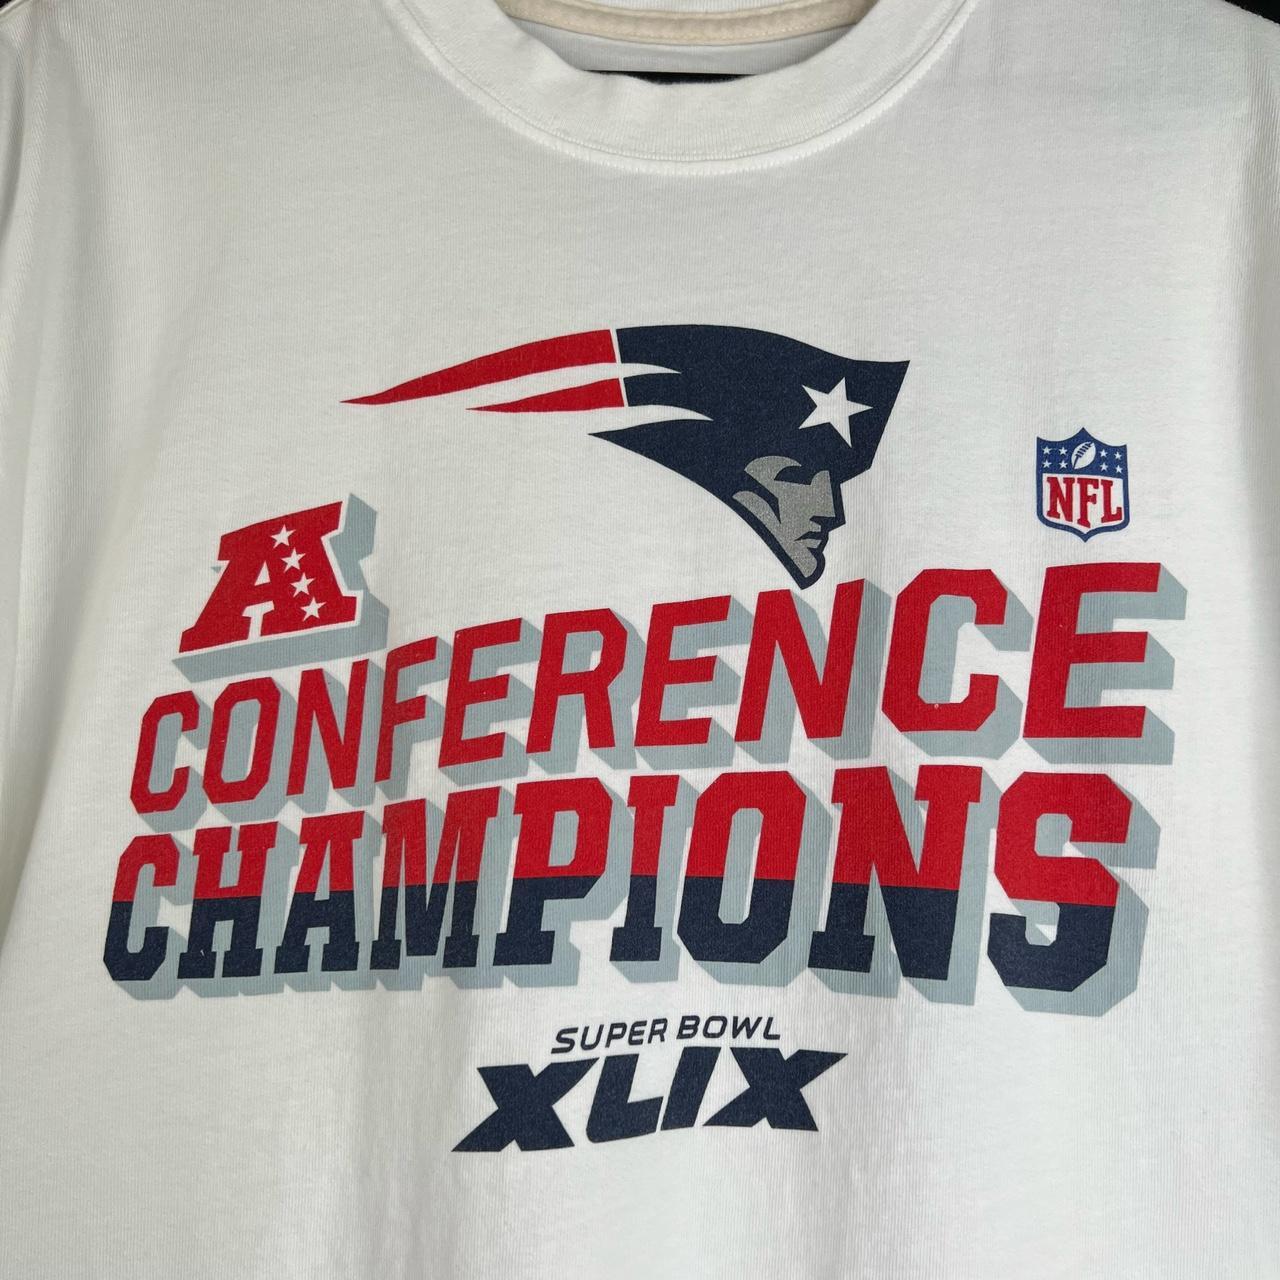 Nike Super Bowl XLIX shirt New England Patriots vs - Depop